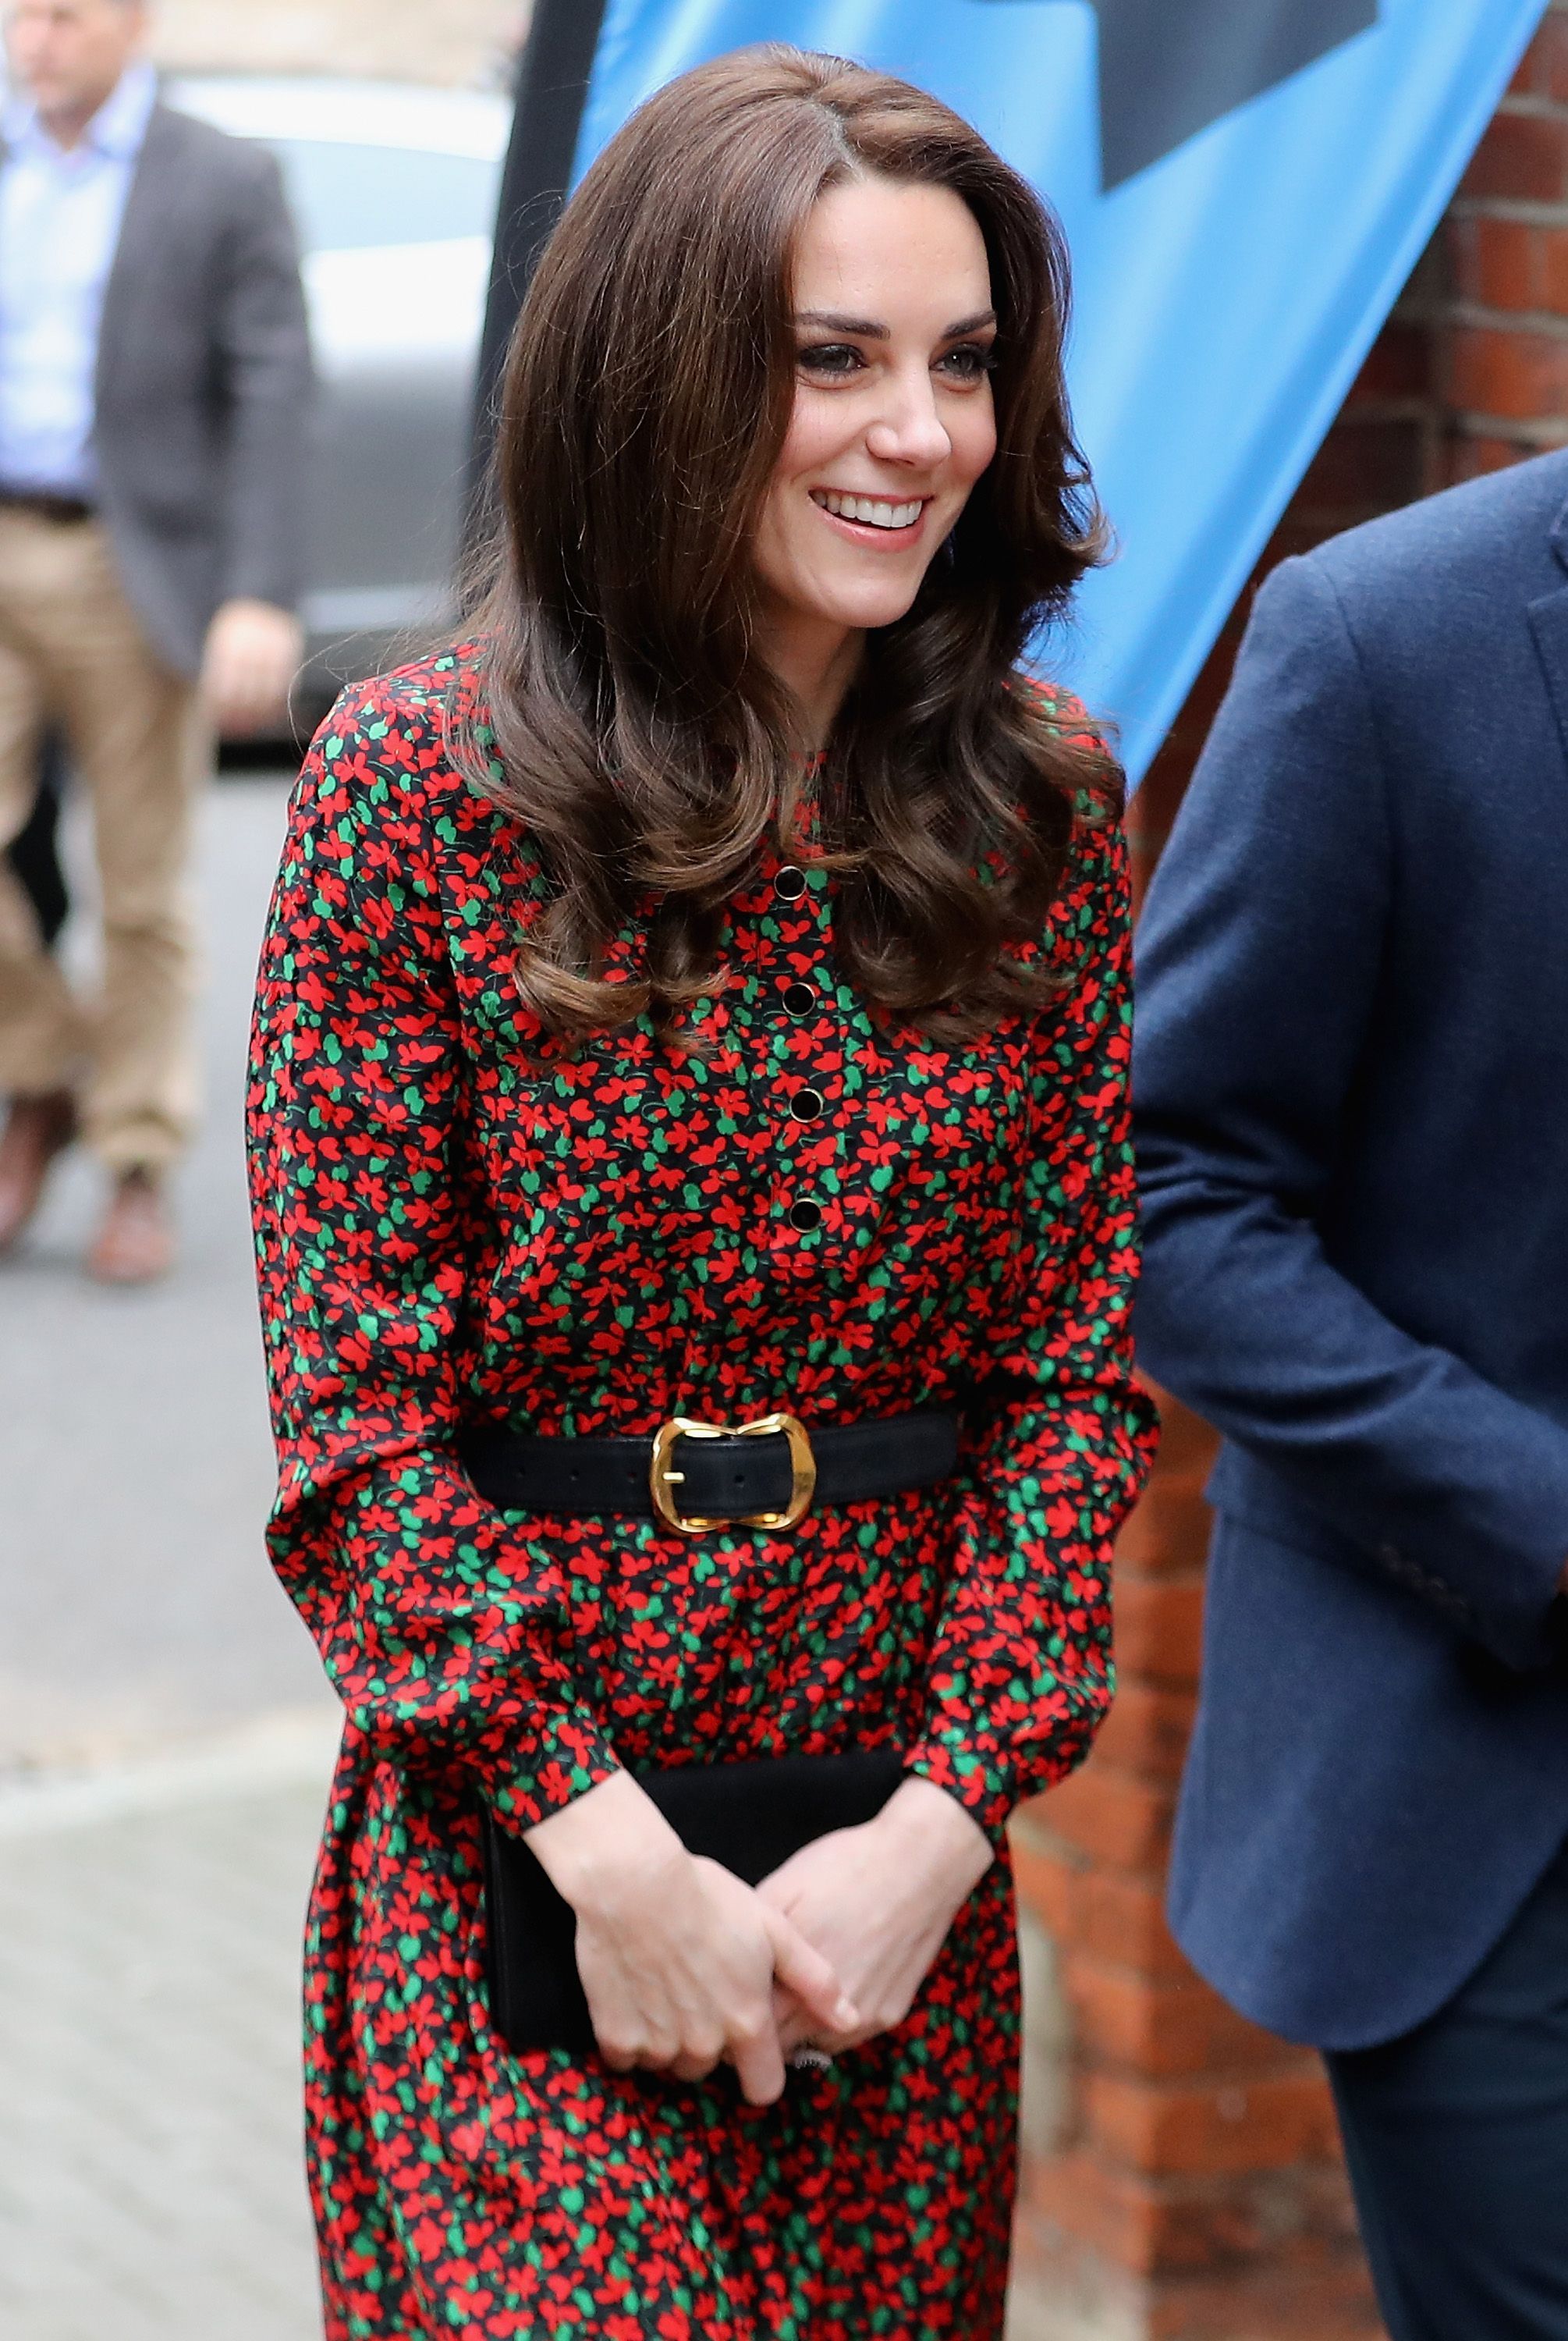 Кейт Миддлтон удивила образом в мини-шортах (фото) | Королевская семья | 1+1 